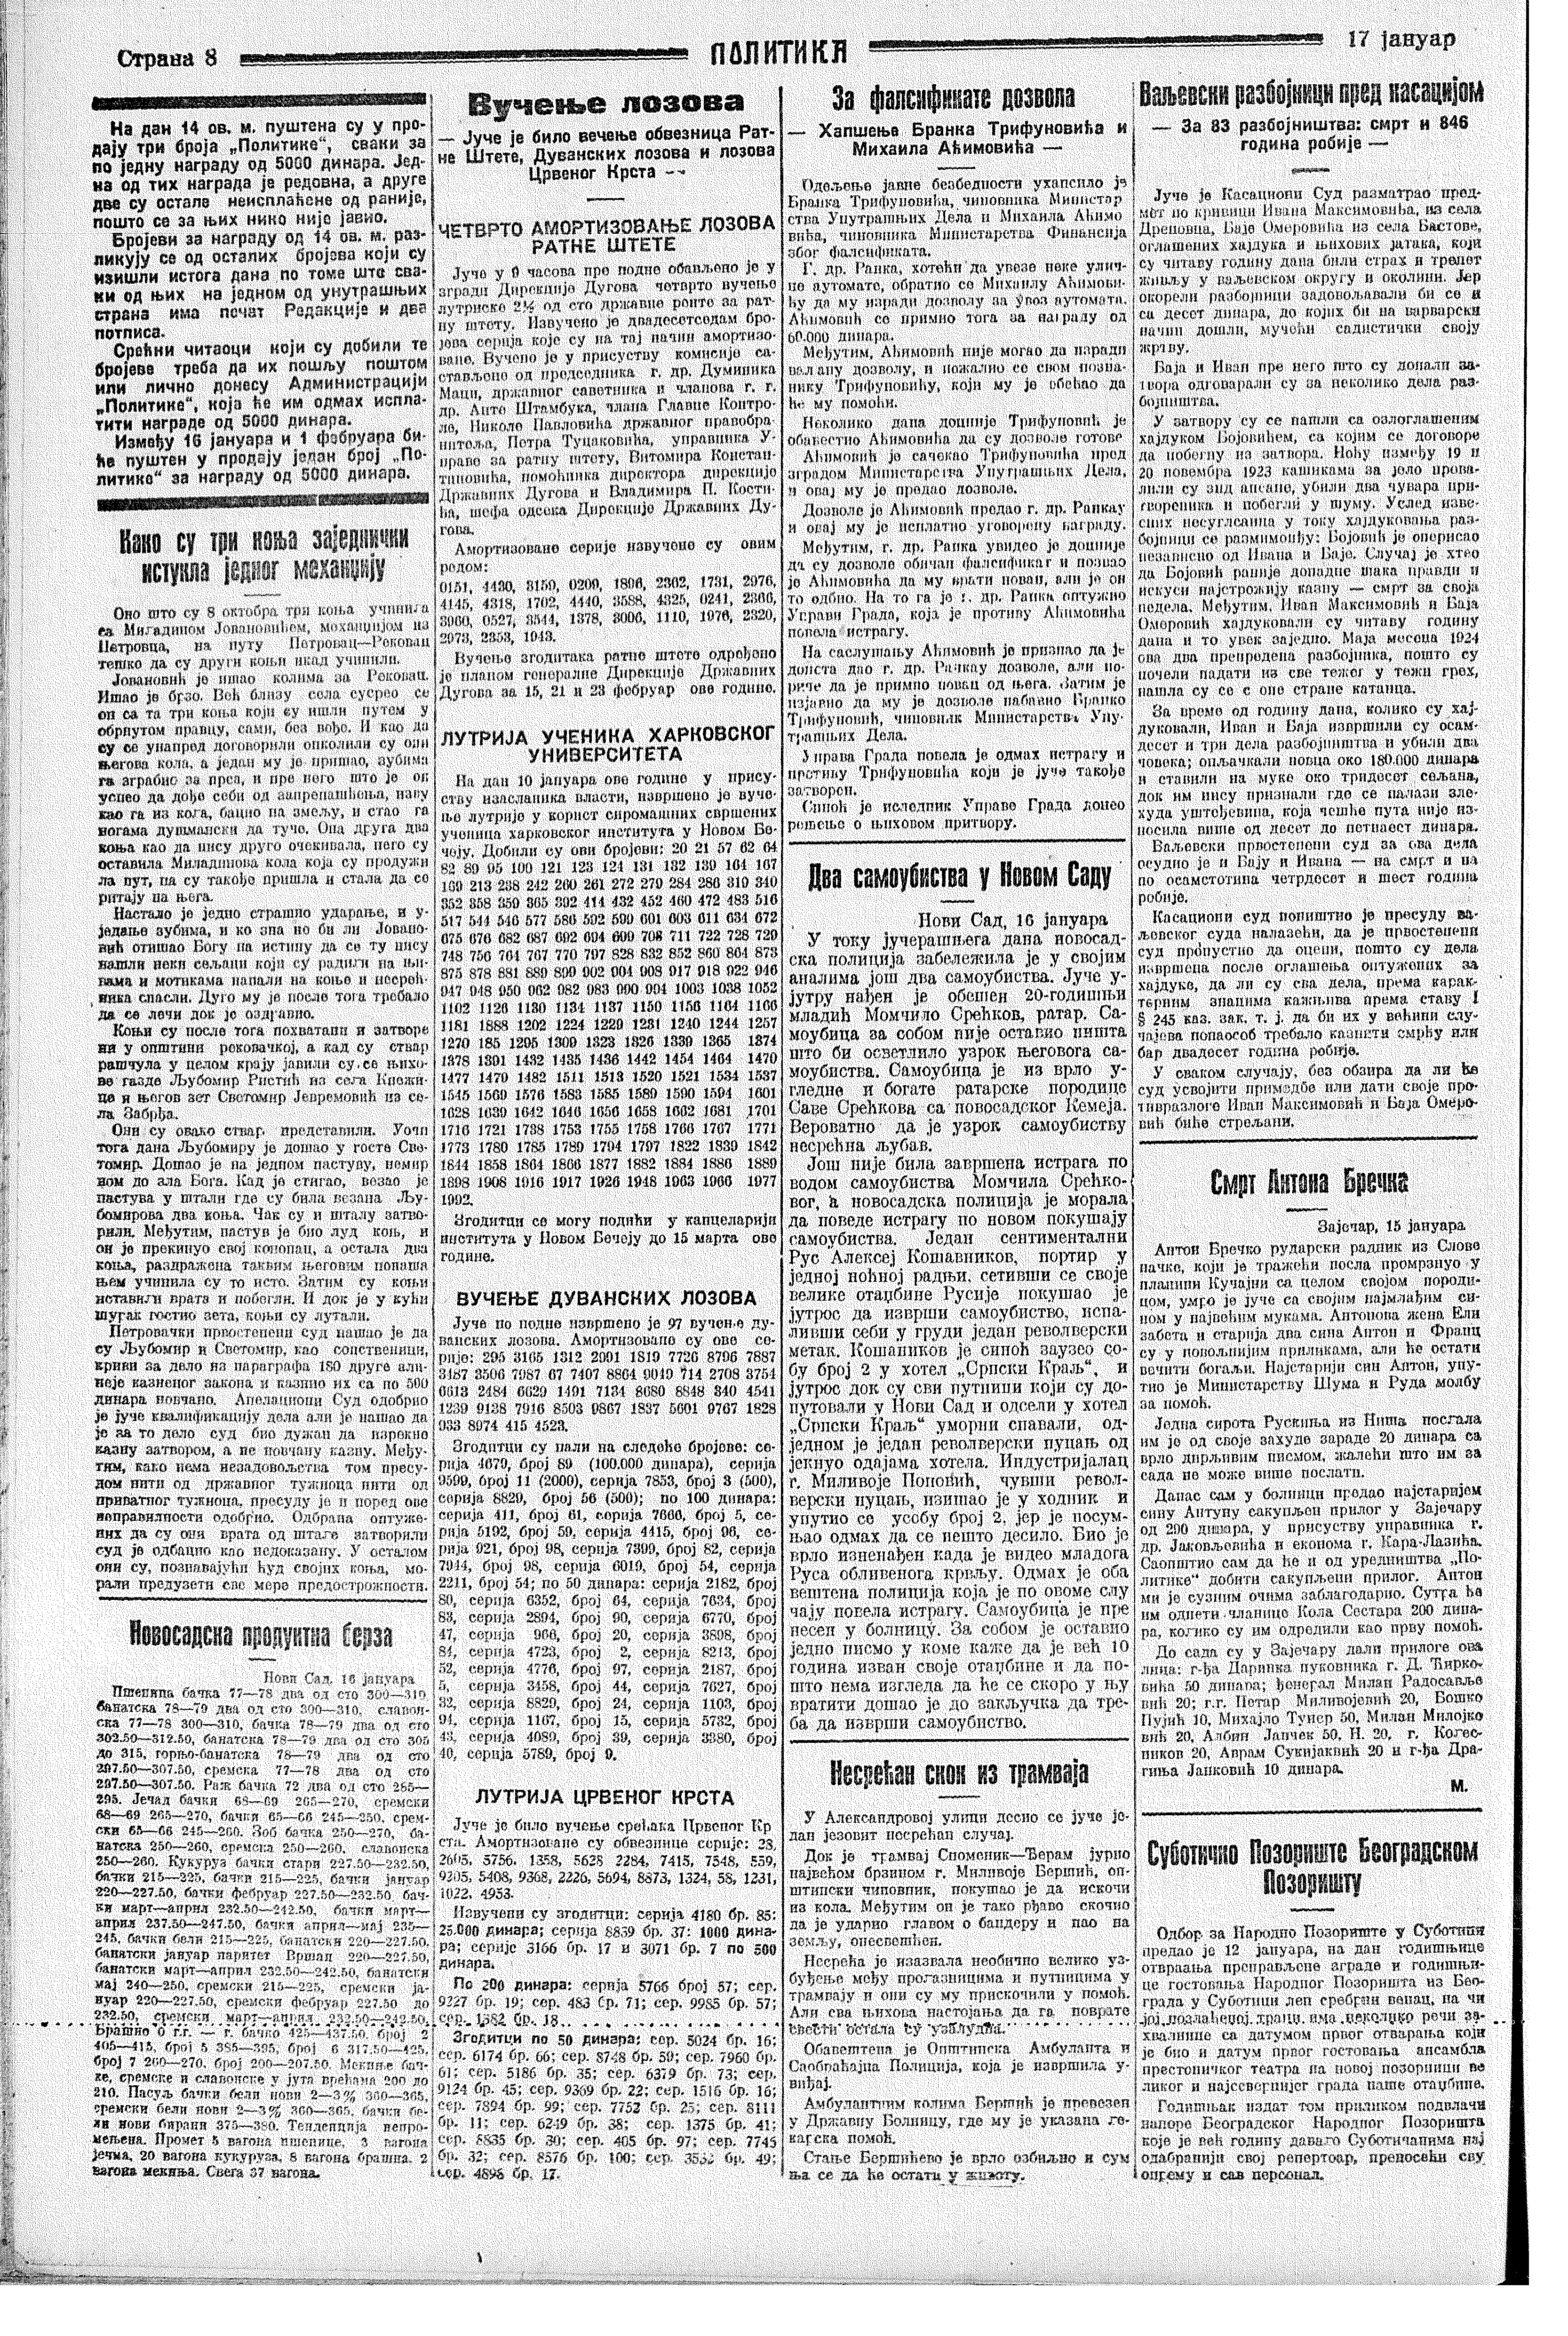 Drugovi Bojovića osuđeni na smrt, Politika, 17.01.1928.